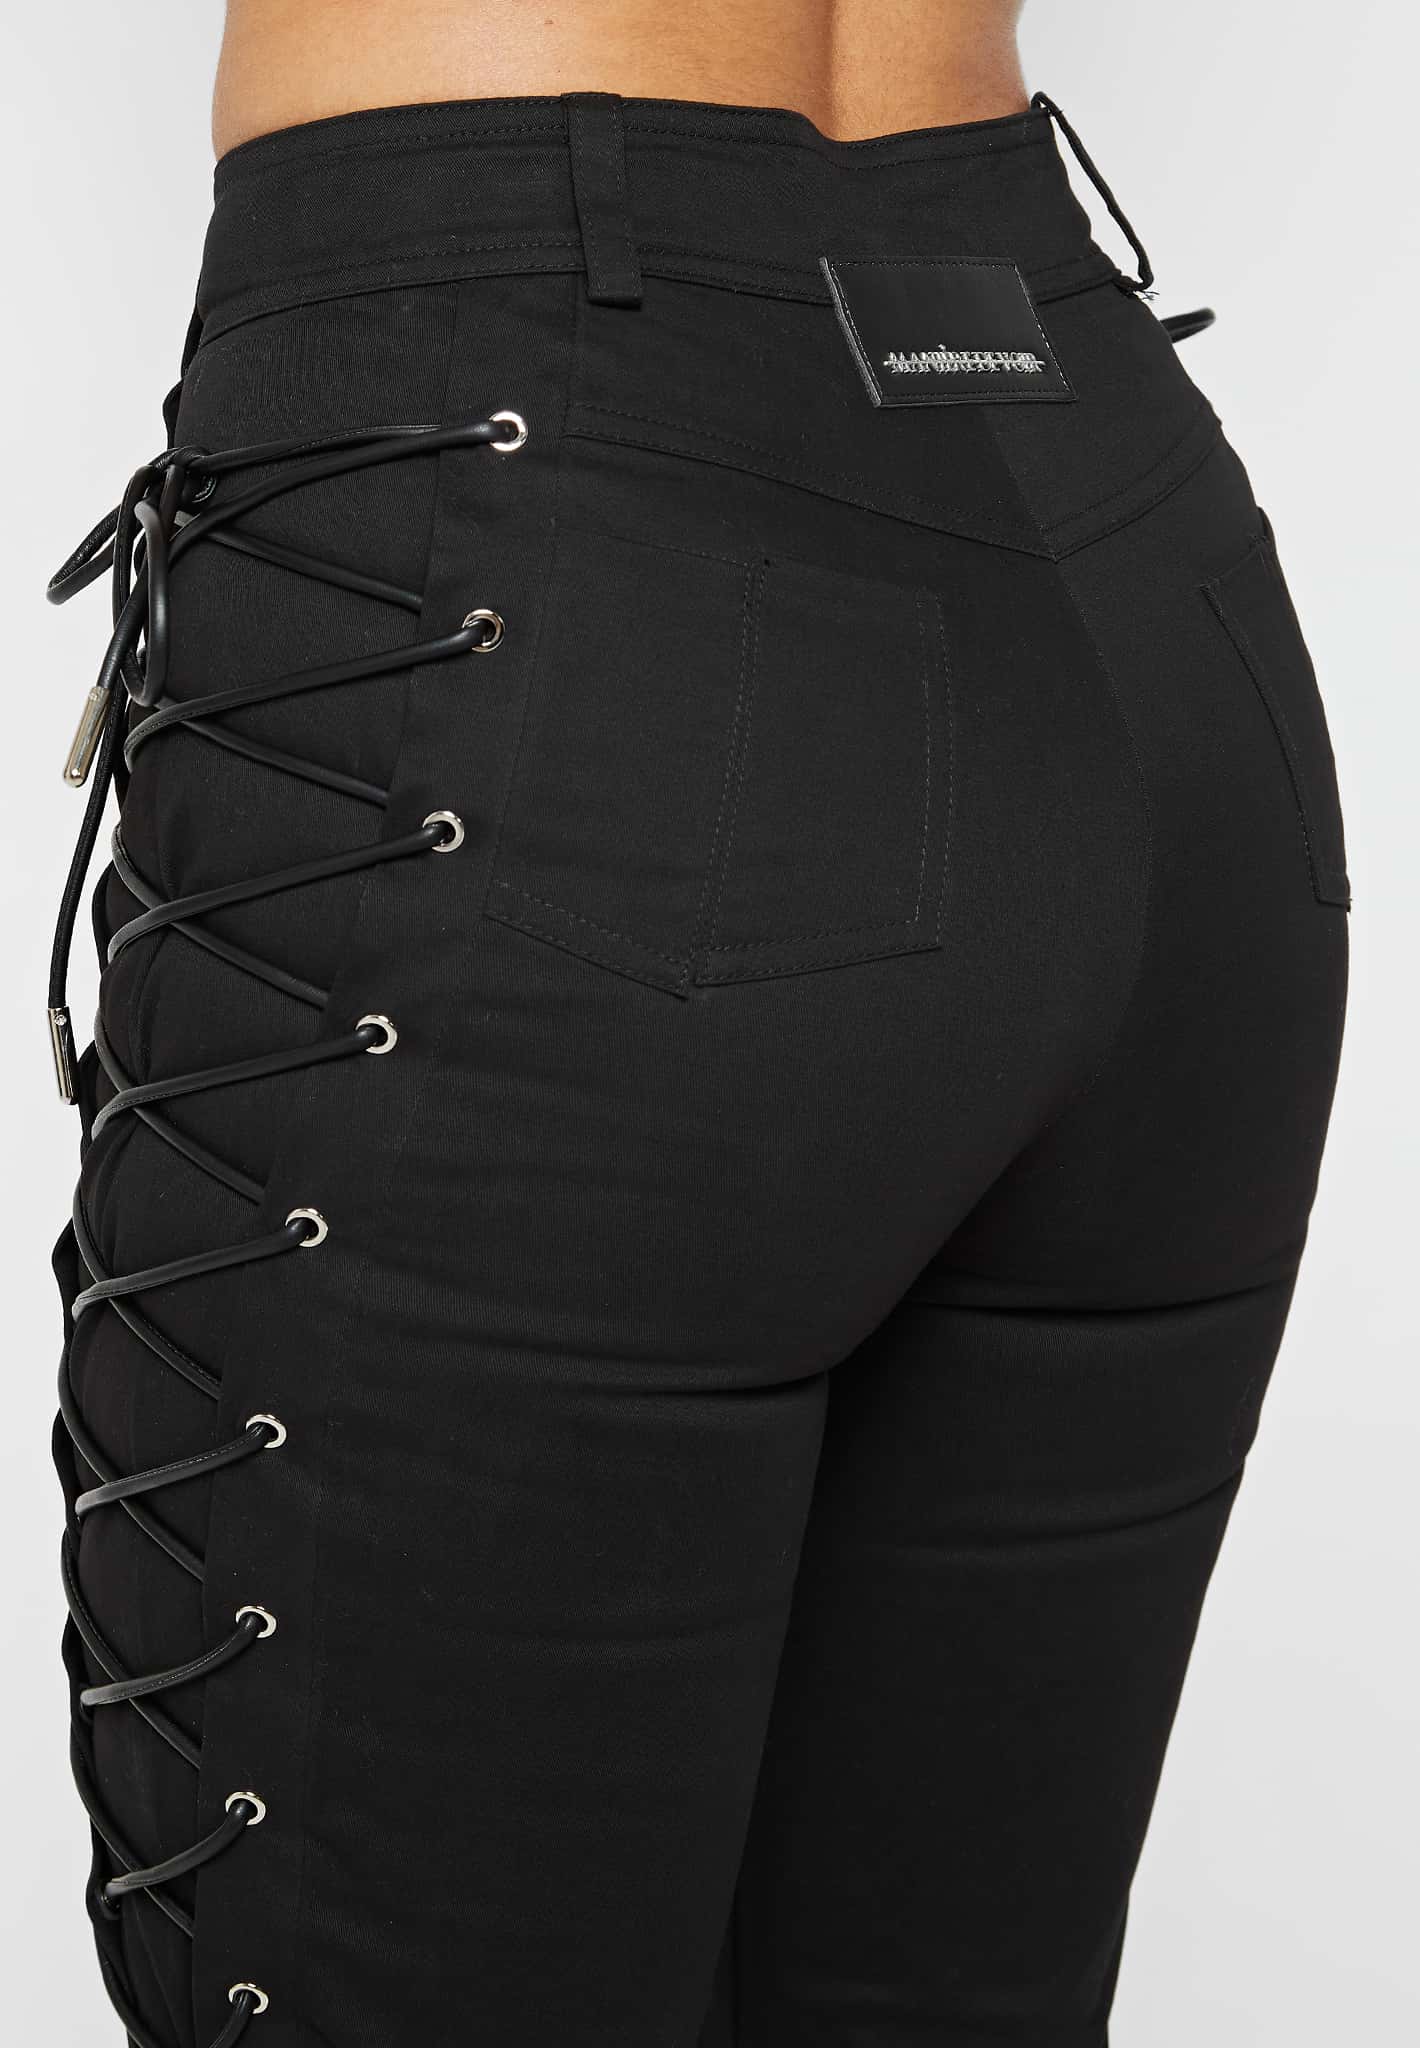 Comfortable black slender figure opaque lace pants